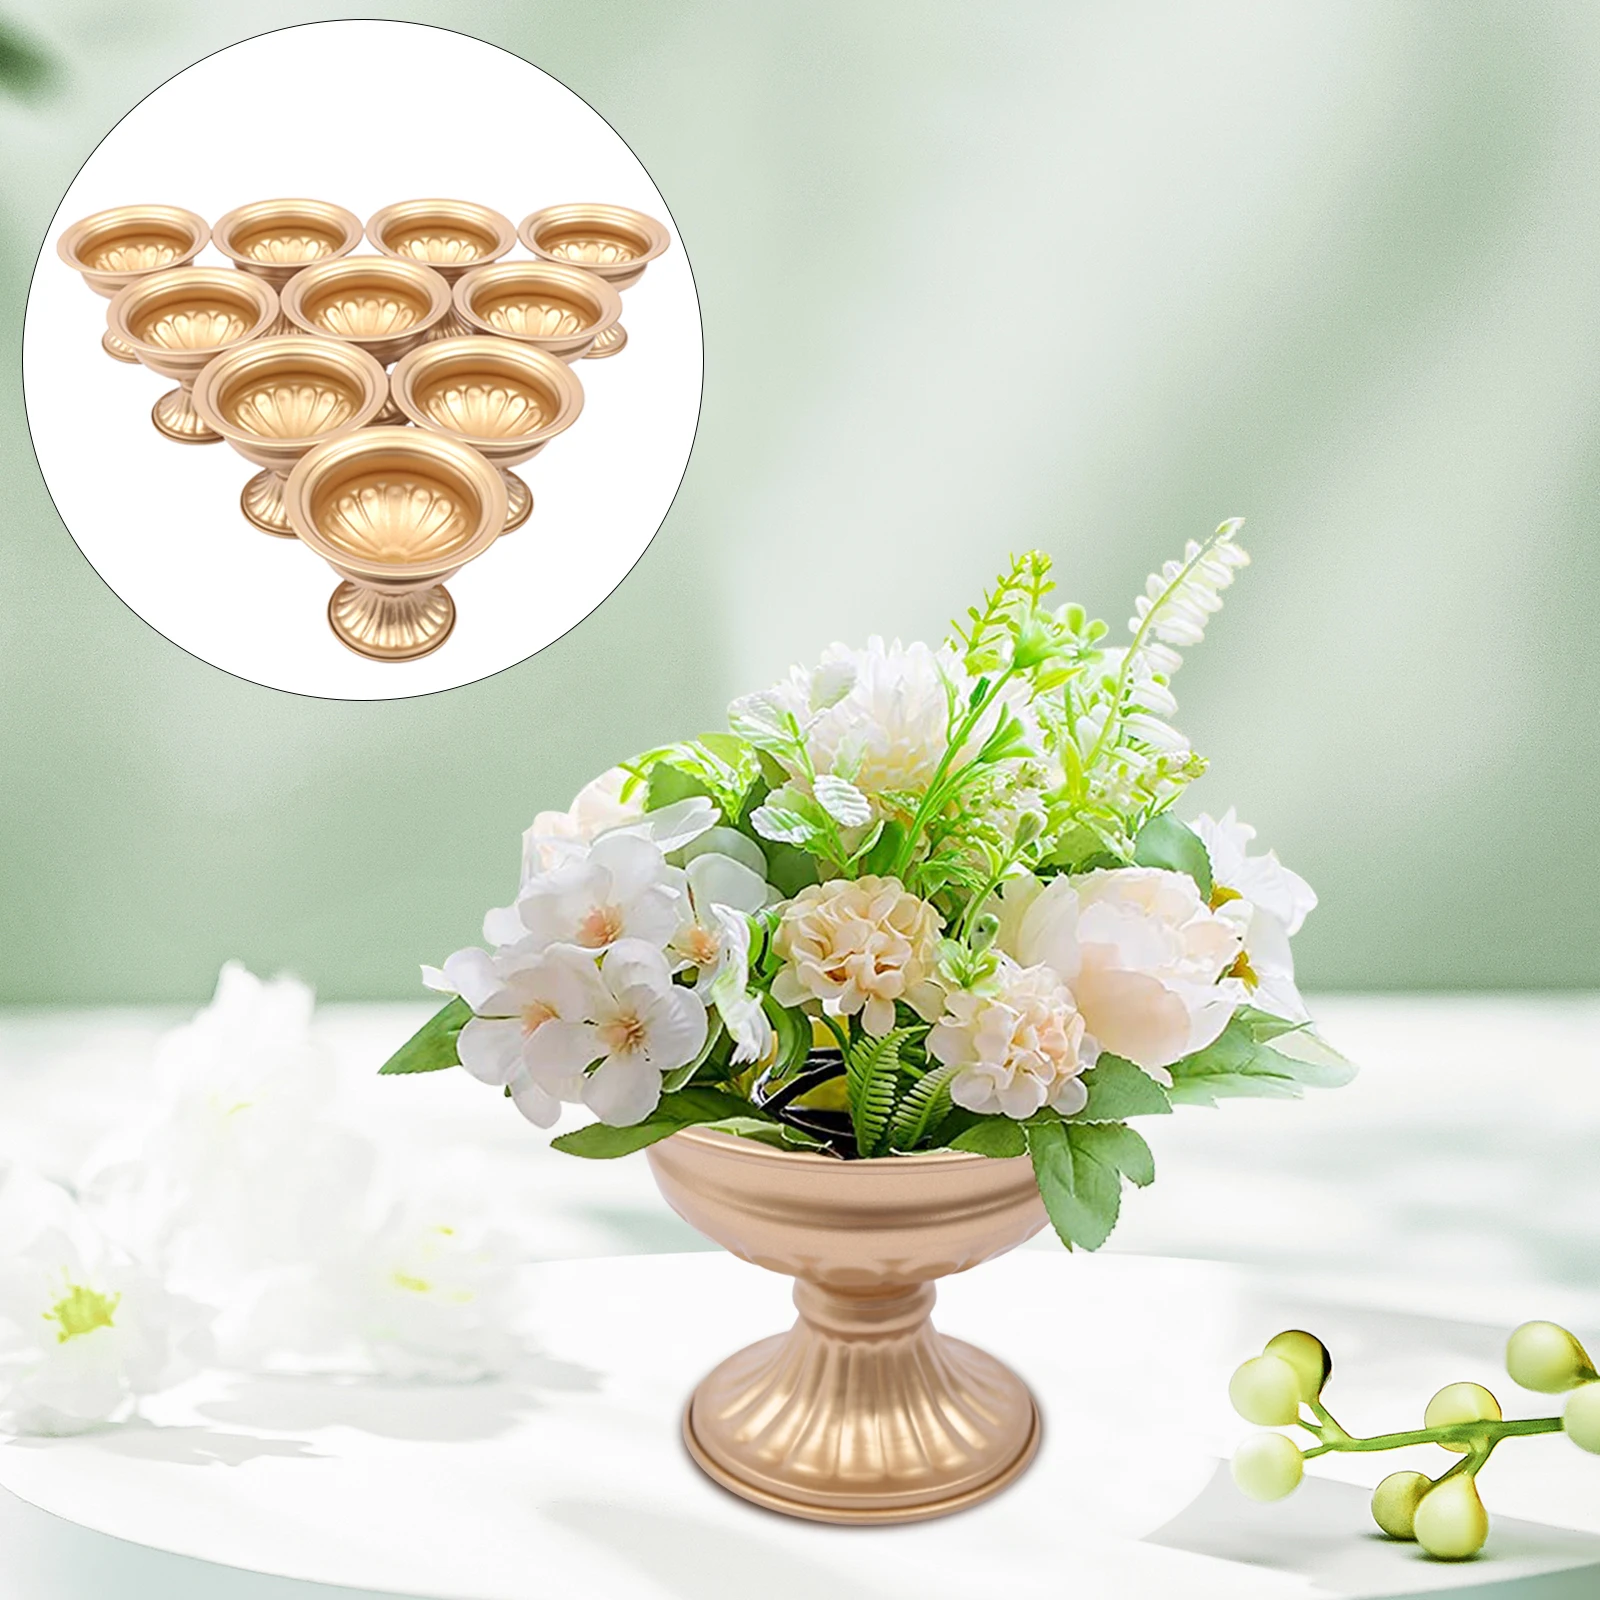 

10pcs Baking Lacquer DIY Flower Trumpet Vase Tabletop Banquet Wedding Party Centerpiece Decor Gold